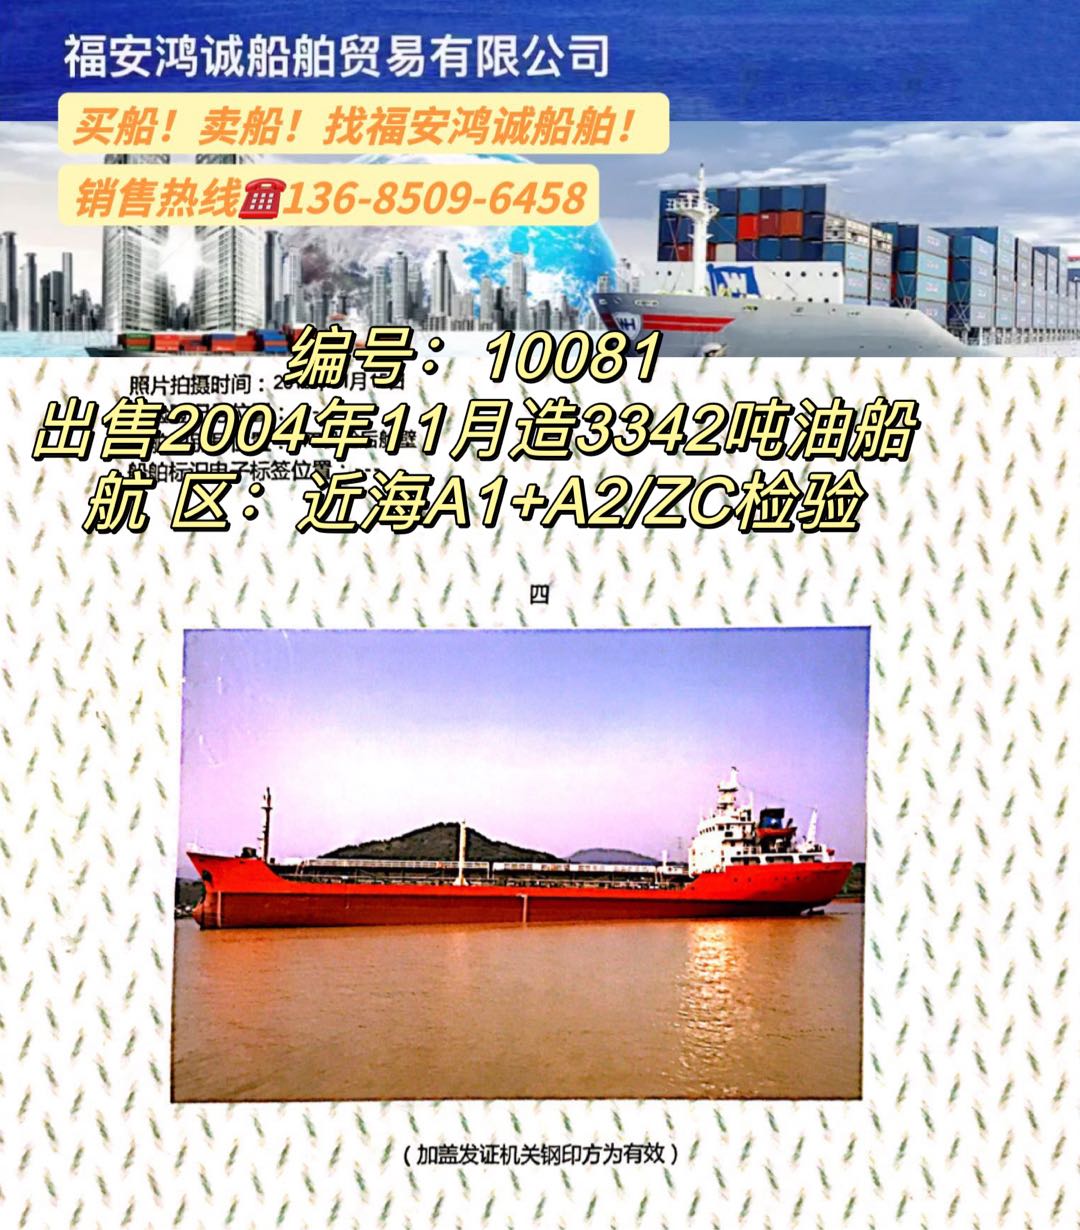 出售04年3342吨双壳油船